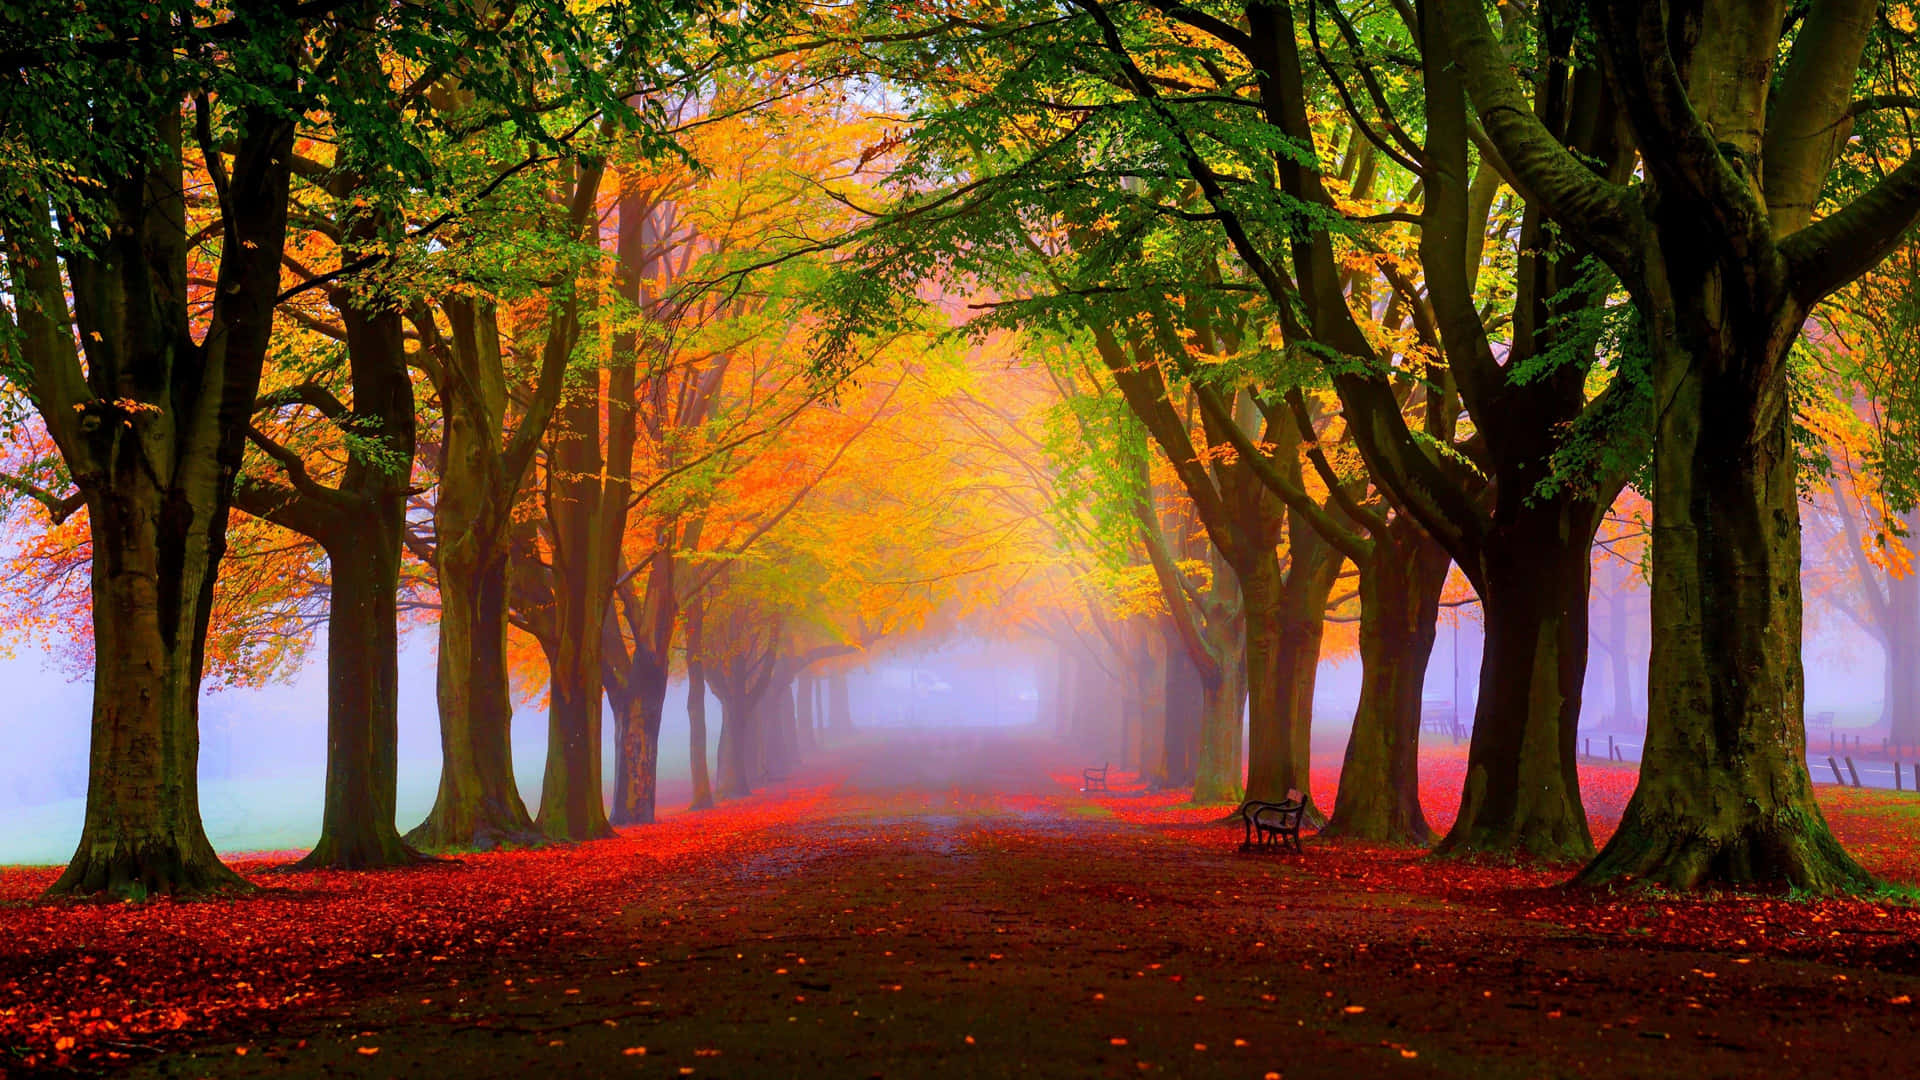 !Nyd de smukke farver i efteråret! Wallpaper